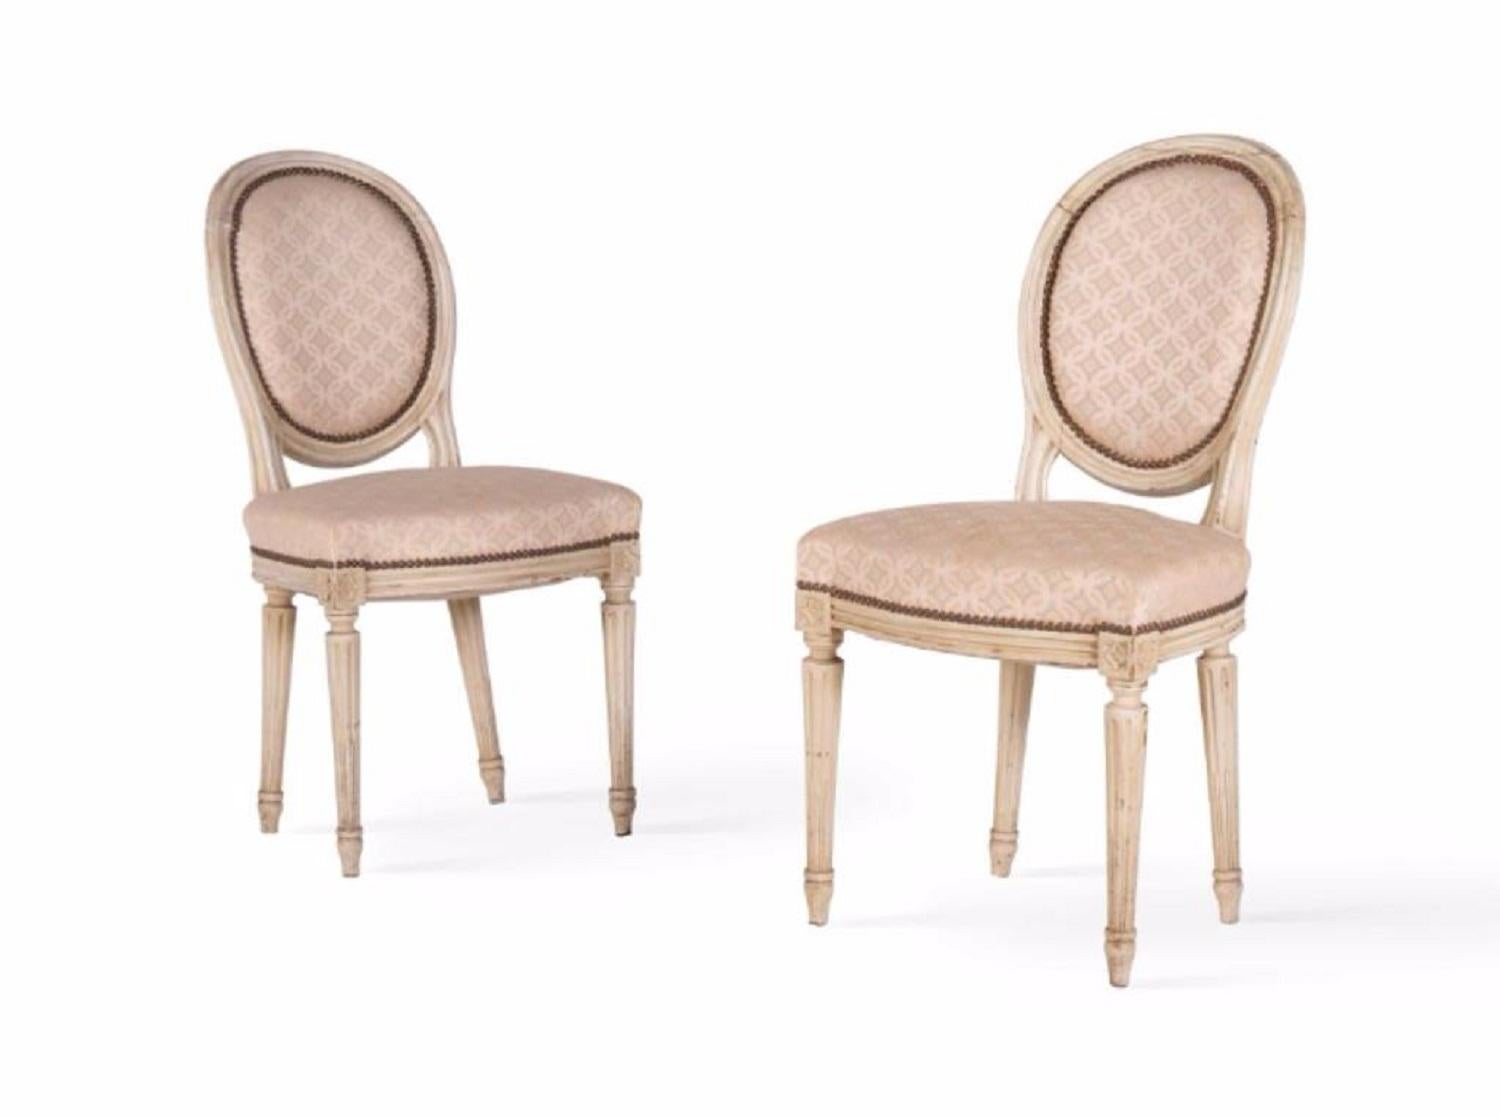 Zwei elegante antike Stühle aus Frankreich im Louis XVI-Stil, um 1860. Diese Stühle sind aus massivem, lackiertem Holz mit geschwungenem Rahmen und Beinen gefertigt und wurden mit einem beigefarbenen Stoff bezogen. rudente'' Detail über die